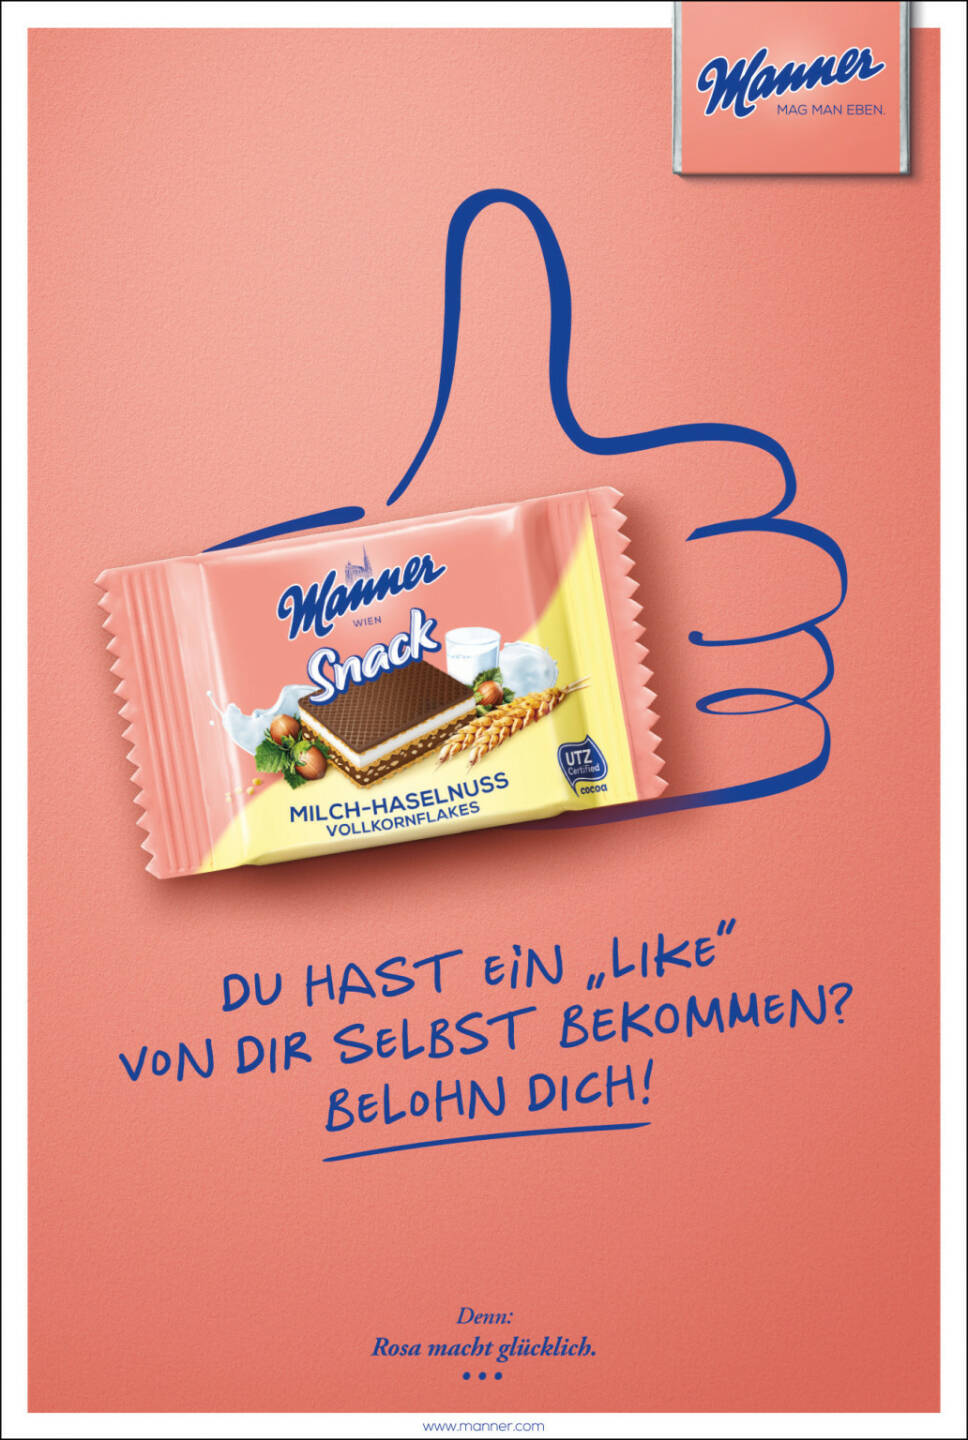 Josef Manner u. Comp. AG: Manner Snack Kampagne 2018, Sujet Social Media, Like, Fotocredit: Manner